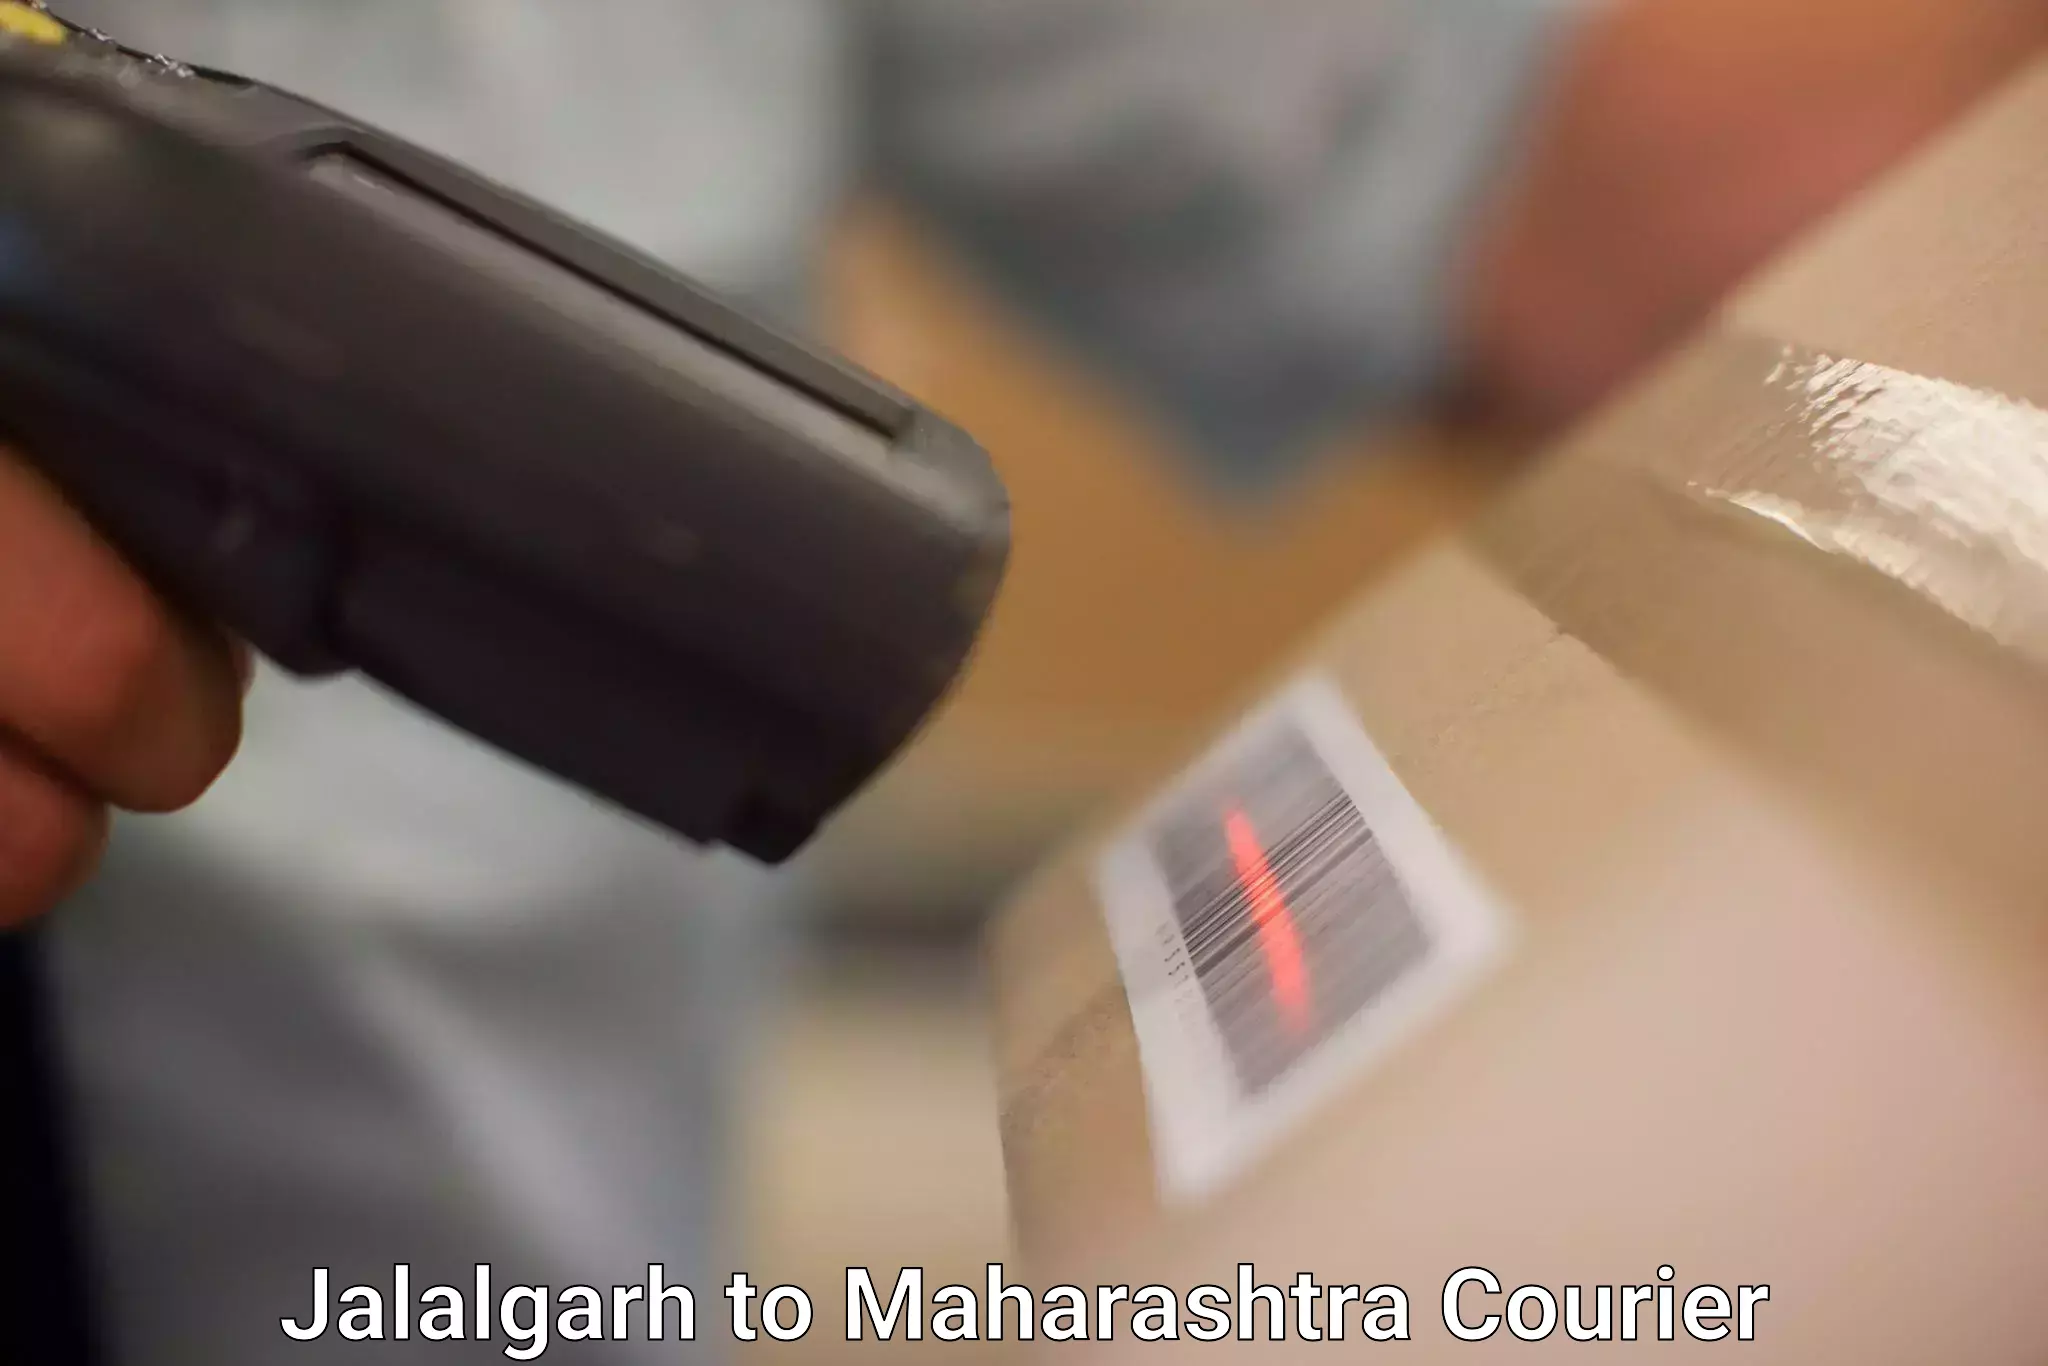 Urban courier service Jalalgarh to Maharashtra